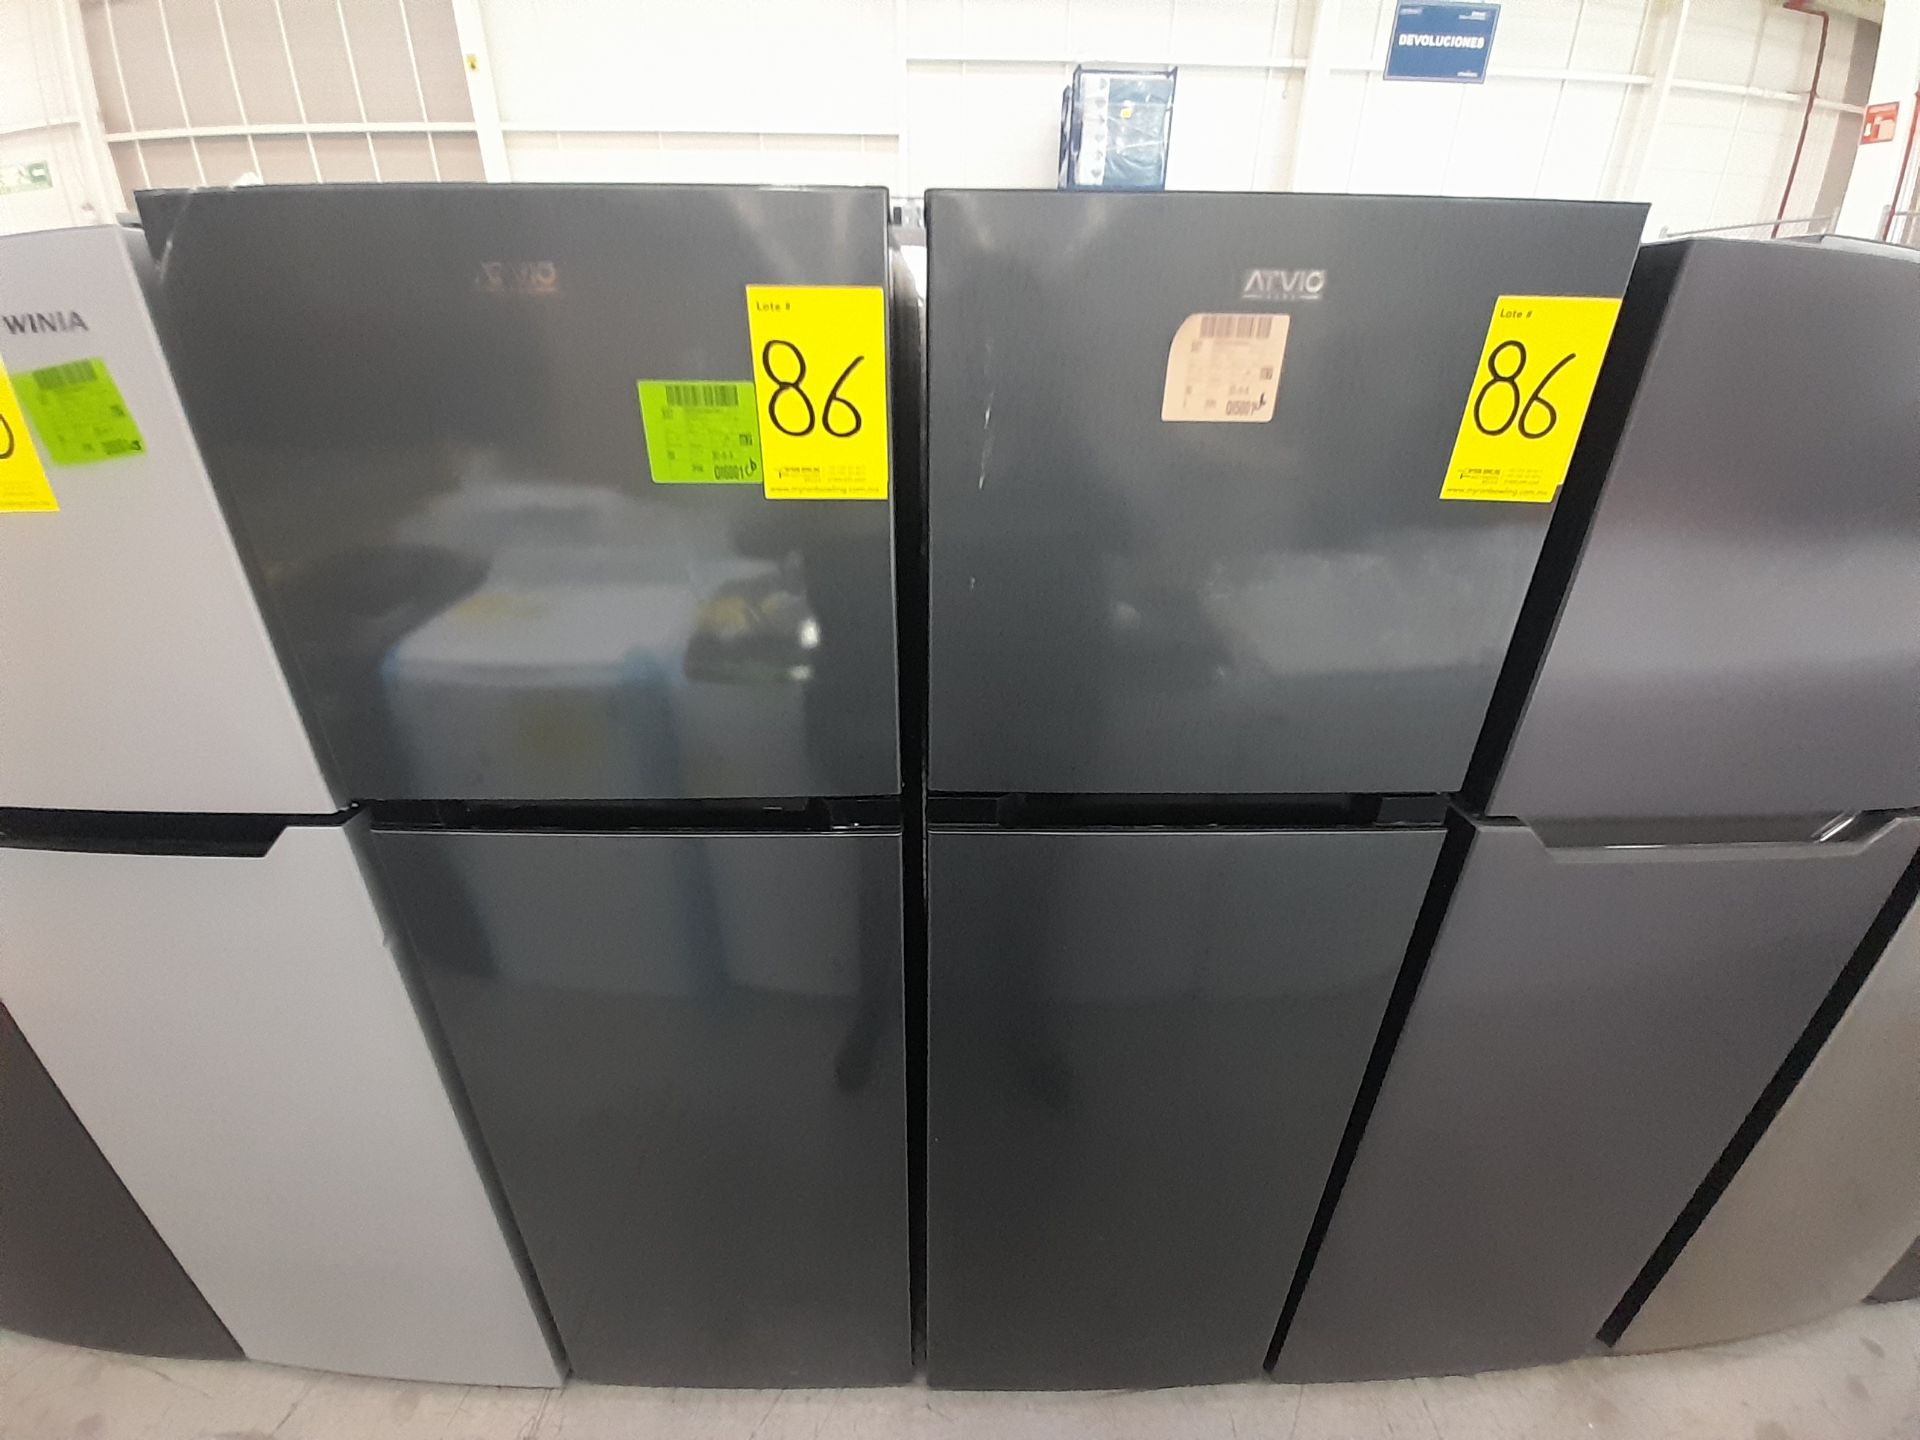 Lote de 2 Refrigeradores contiene: 1 Refrigerador Marca ATVIO, Modelo AT94TMS, Color GRIS; 1 Re